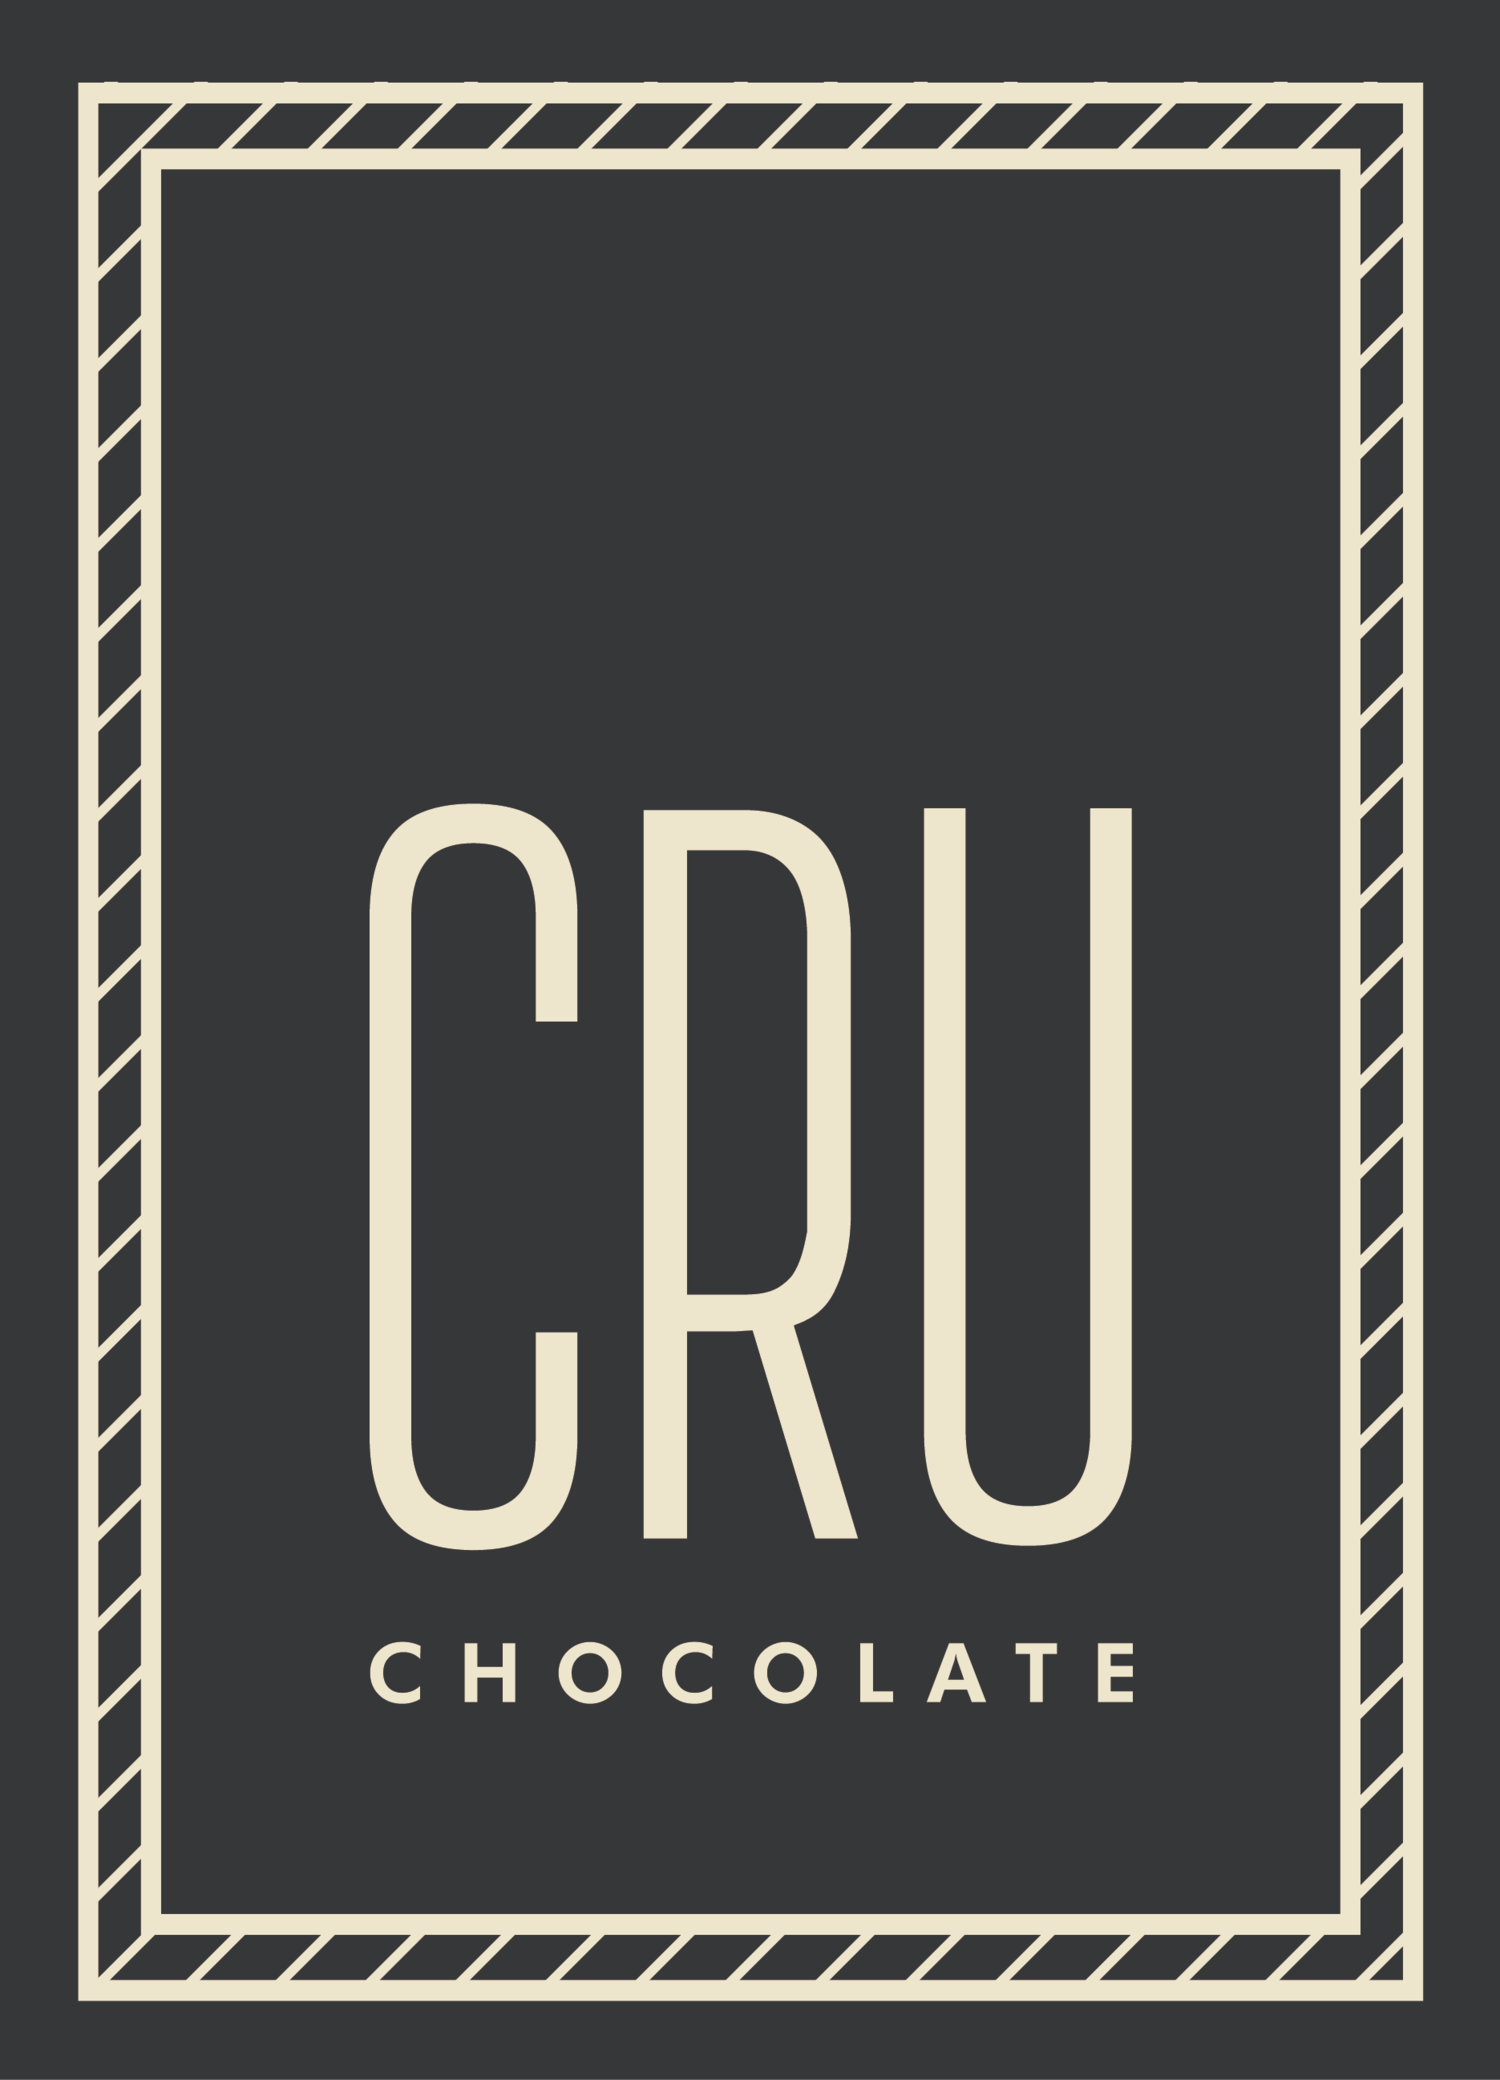 Cru Chocolate